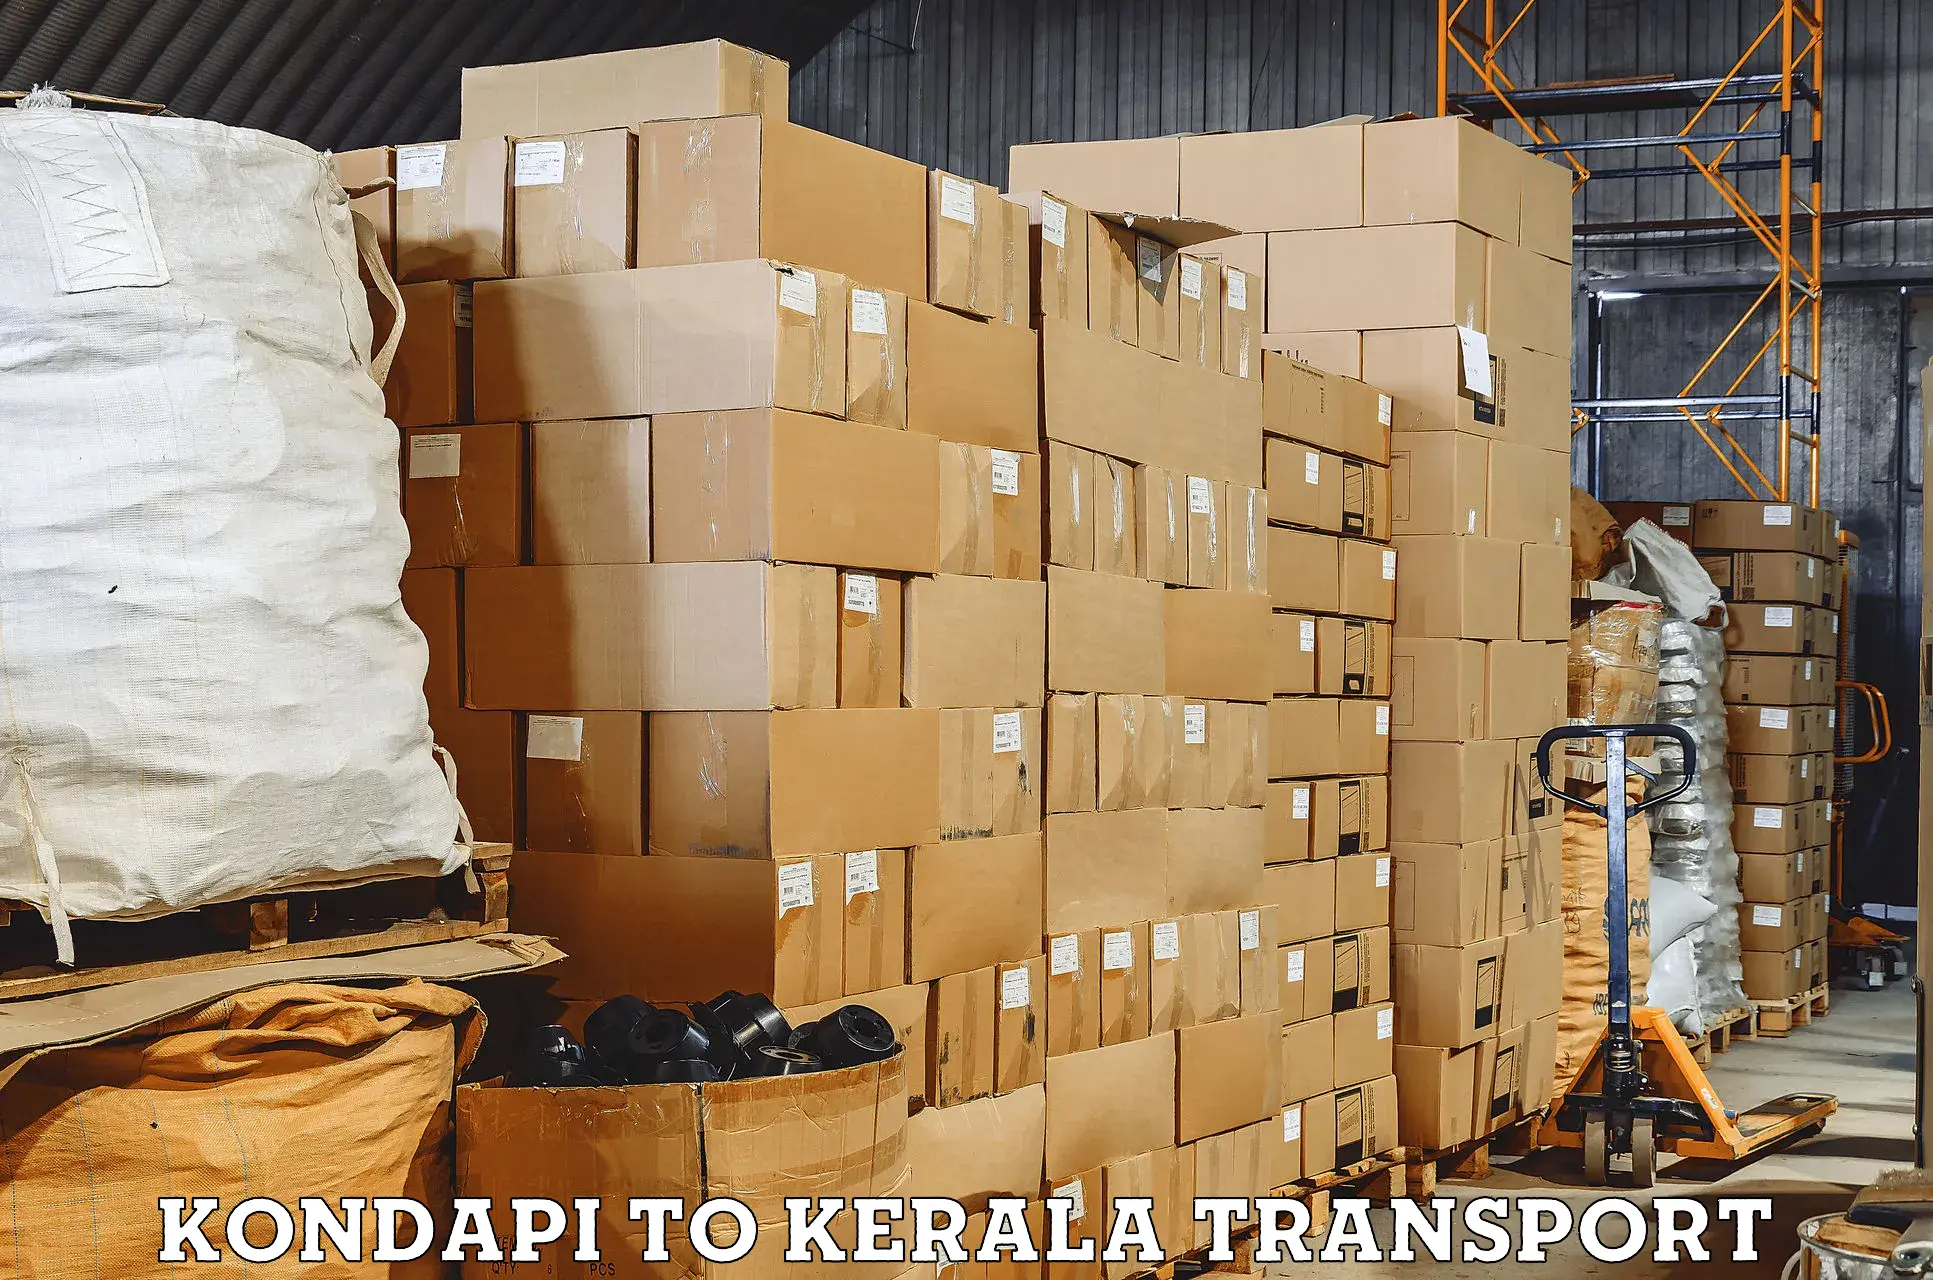 Daily parcel service transport Kondapi to Kalpetta